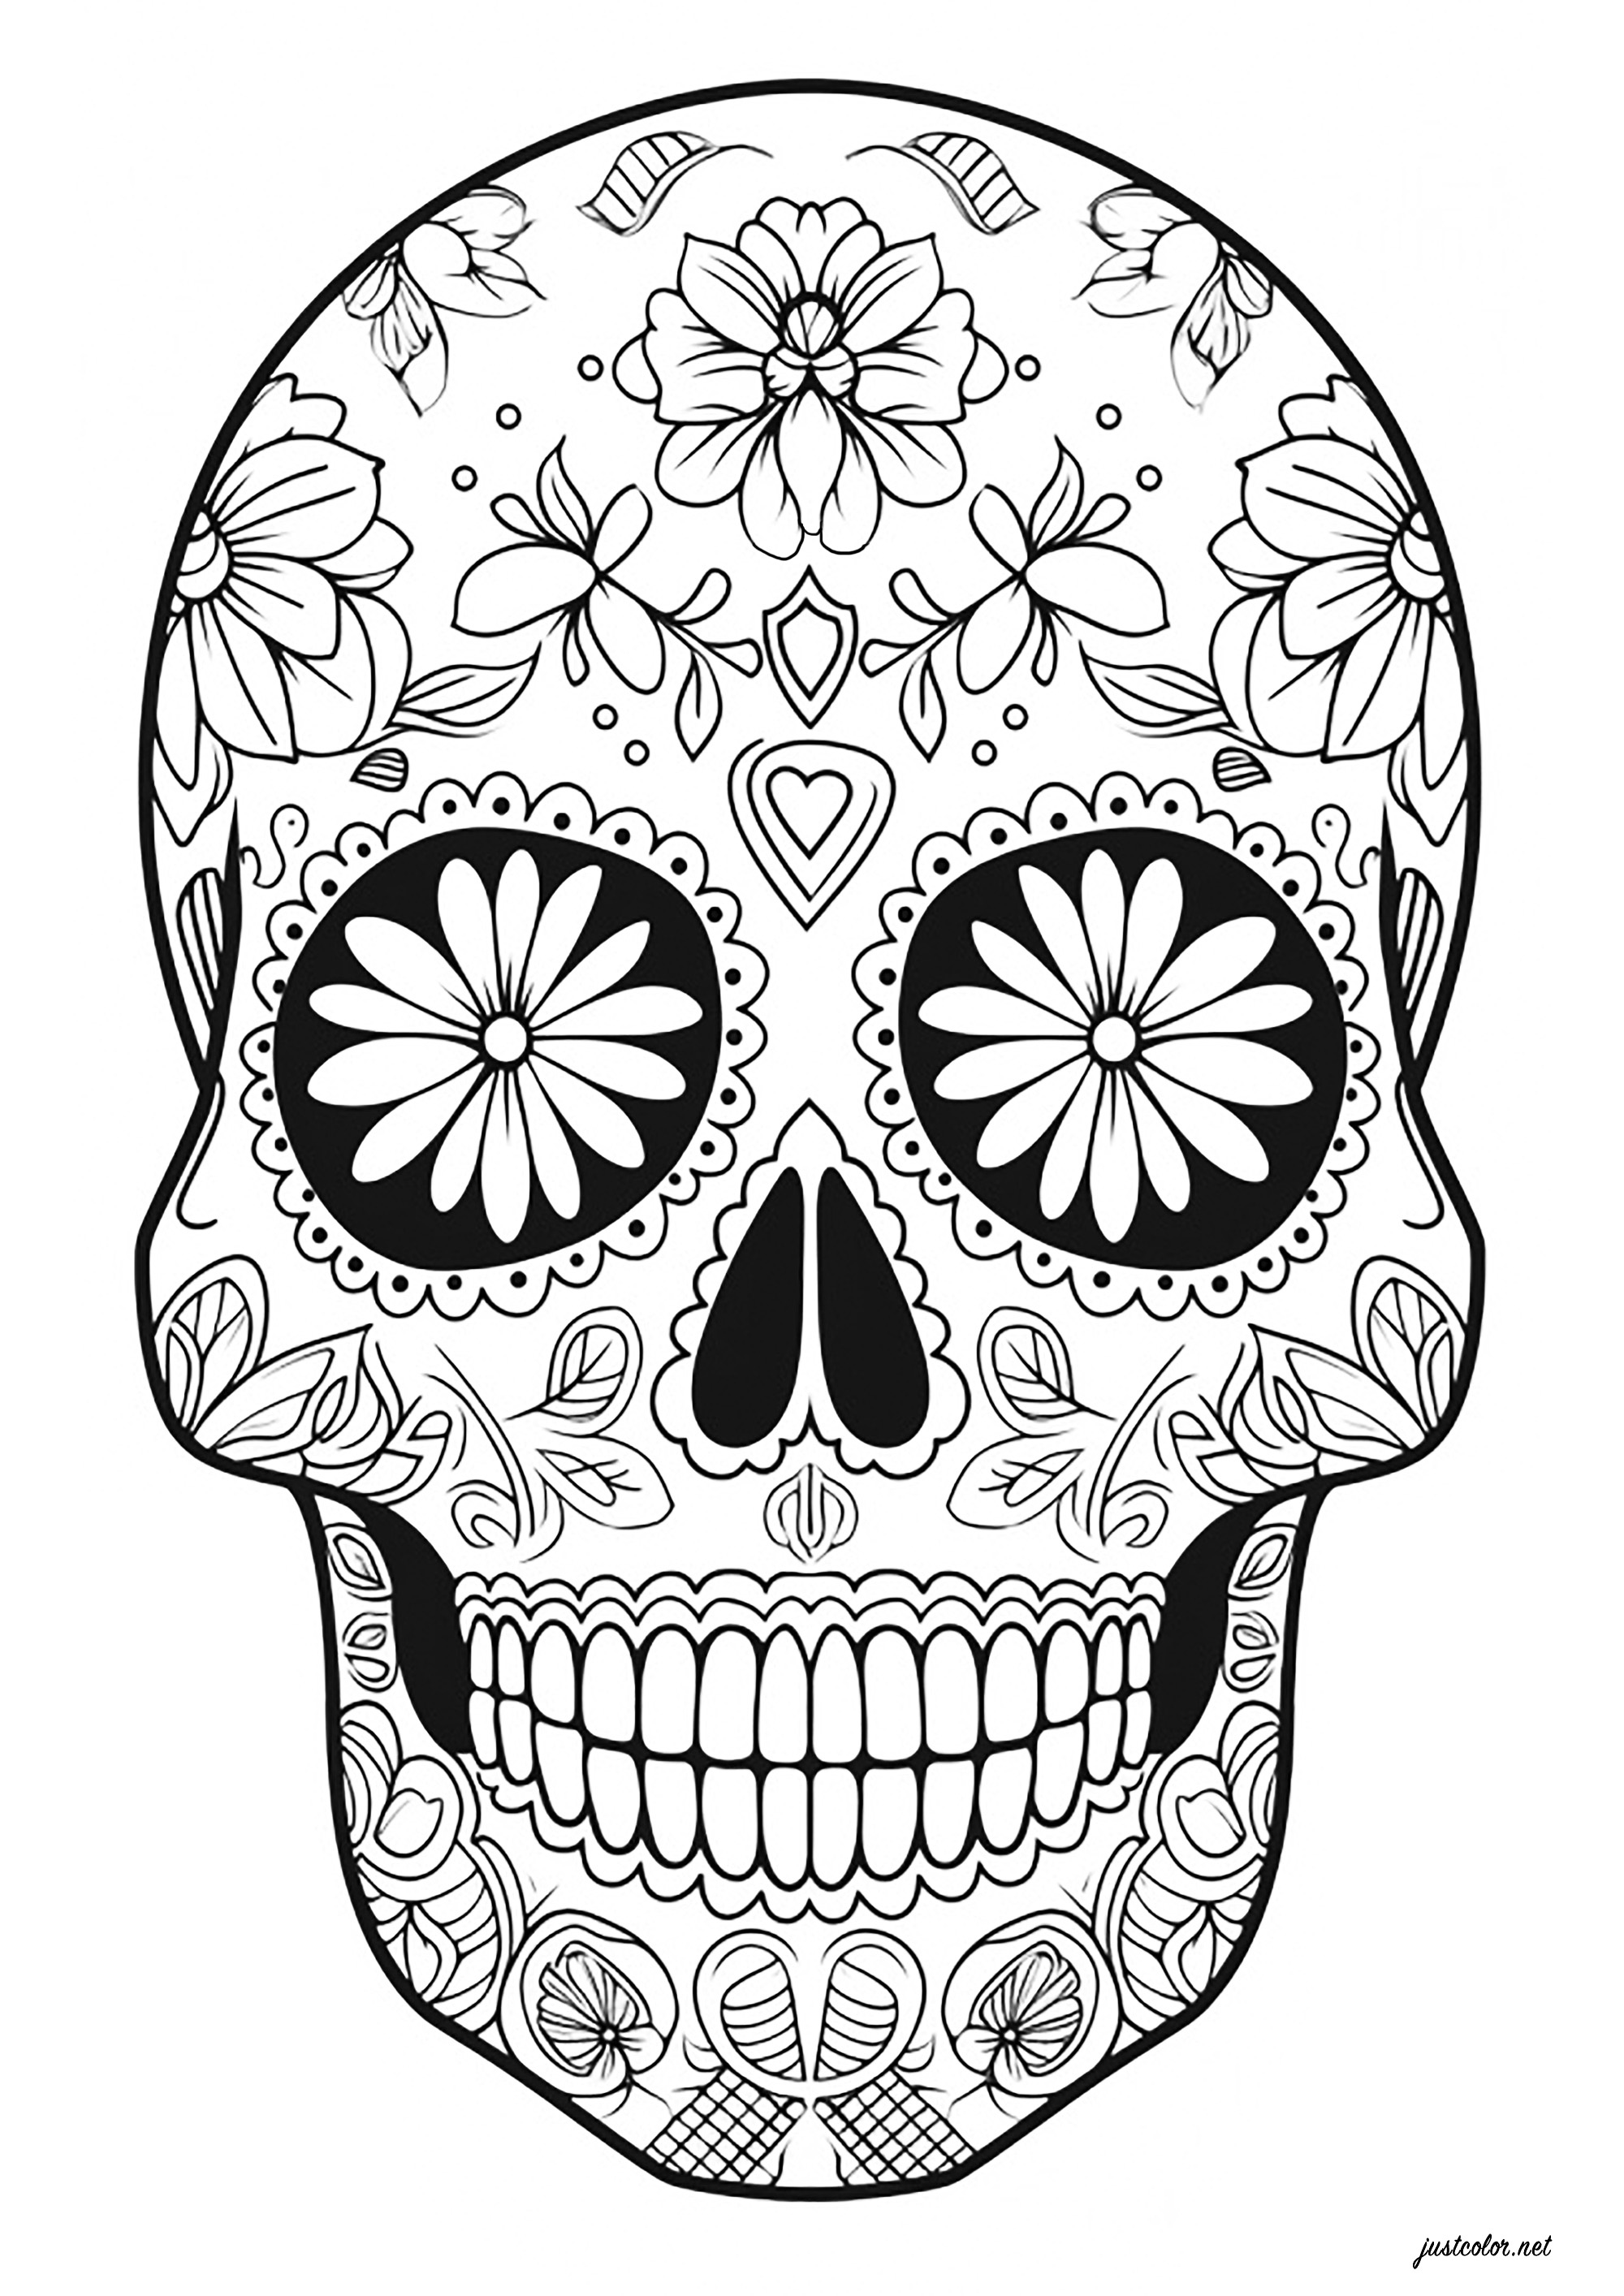 Día de los muertos skull - intricate floral motifs